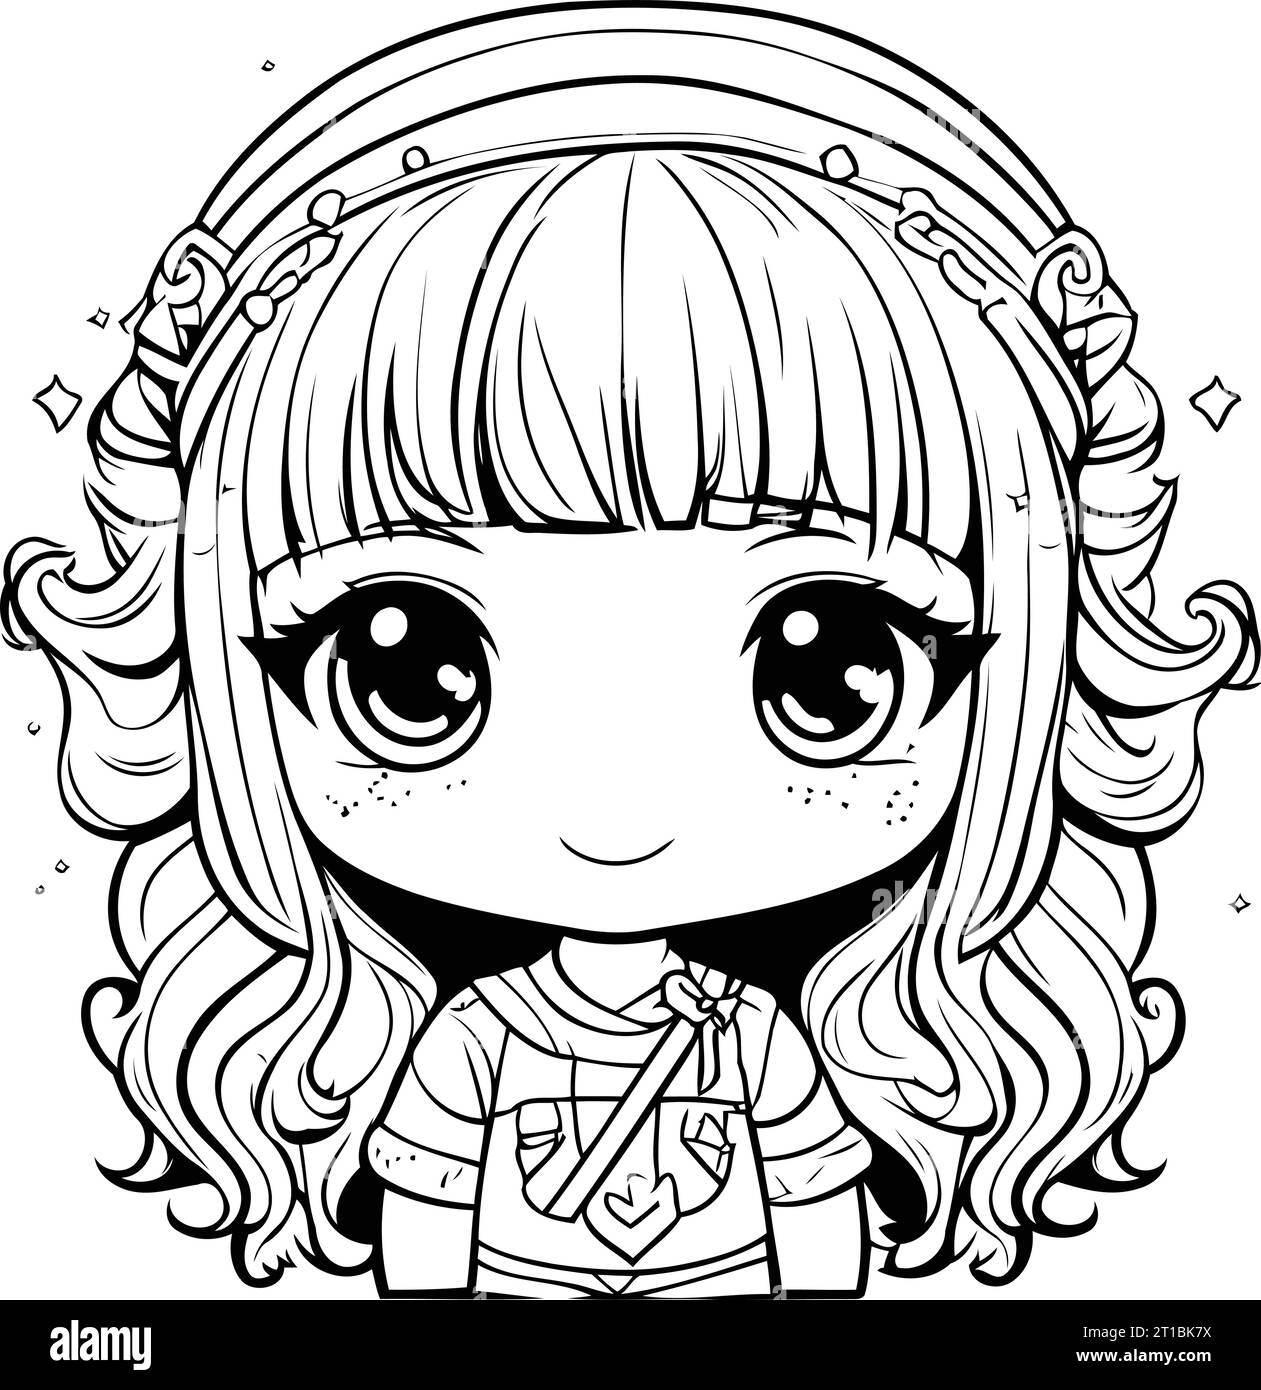 𝙙𝙖𝙧𝙠 𝙞𝙘𝙤𝙣  Anime character drawing, Dark anime girl